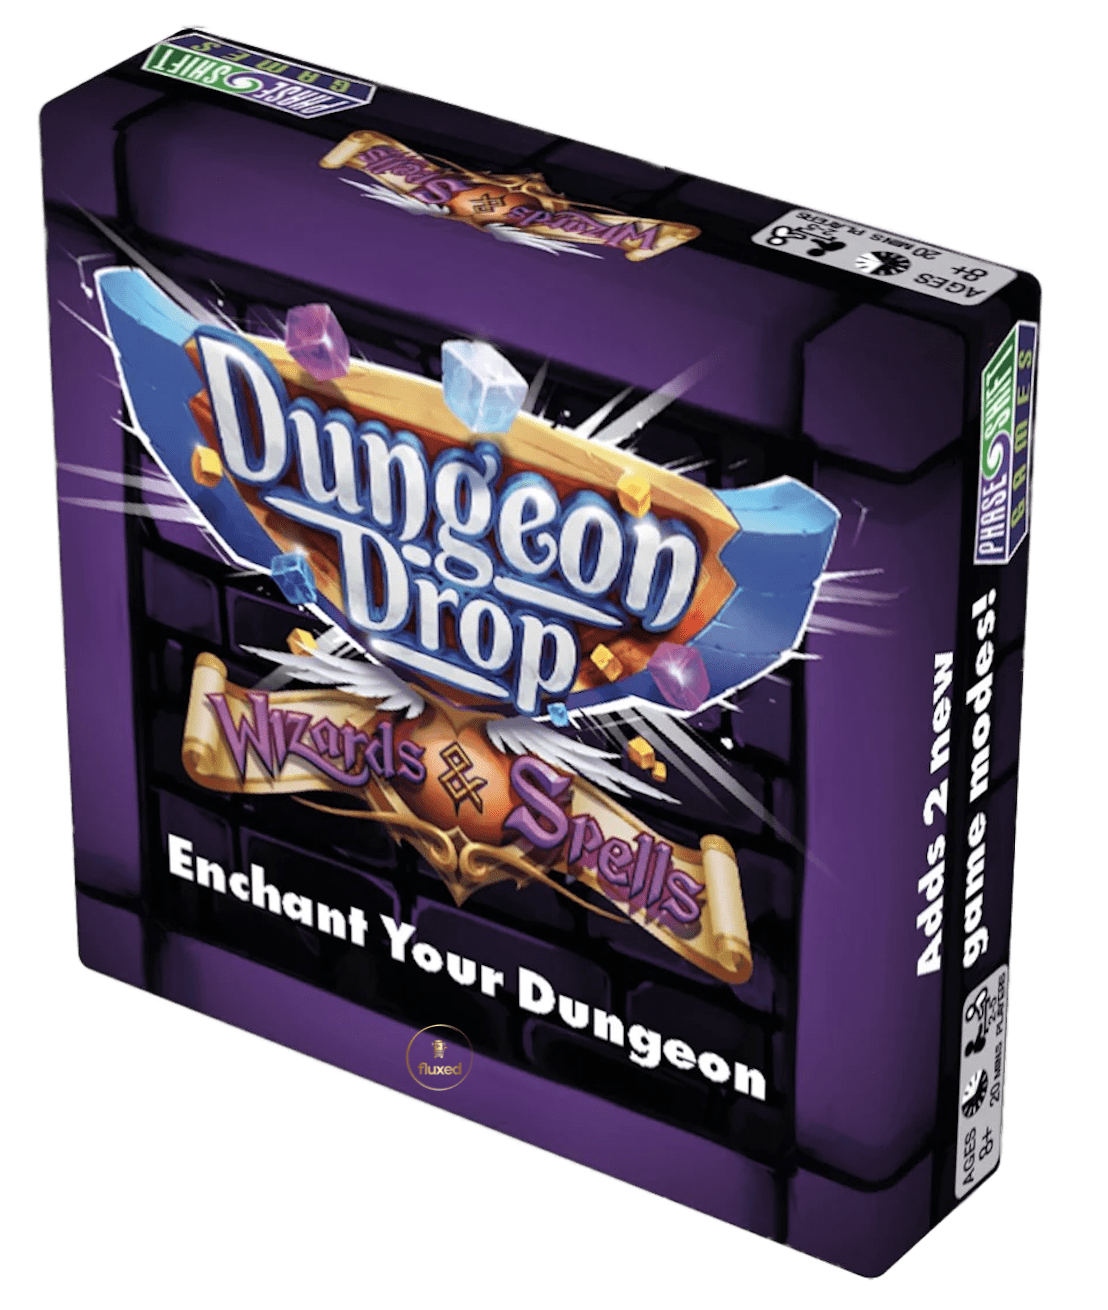 Dungeon Drop - Wizards & Spells - Nur CHF 15! Jetzt kaufen auf fluxed.ch